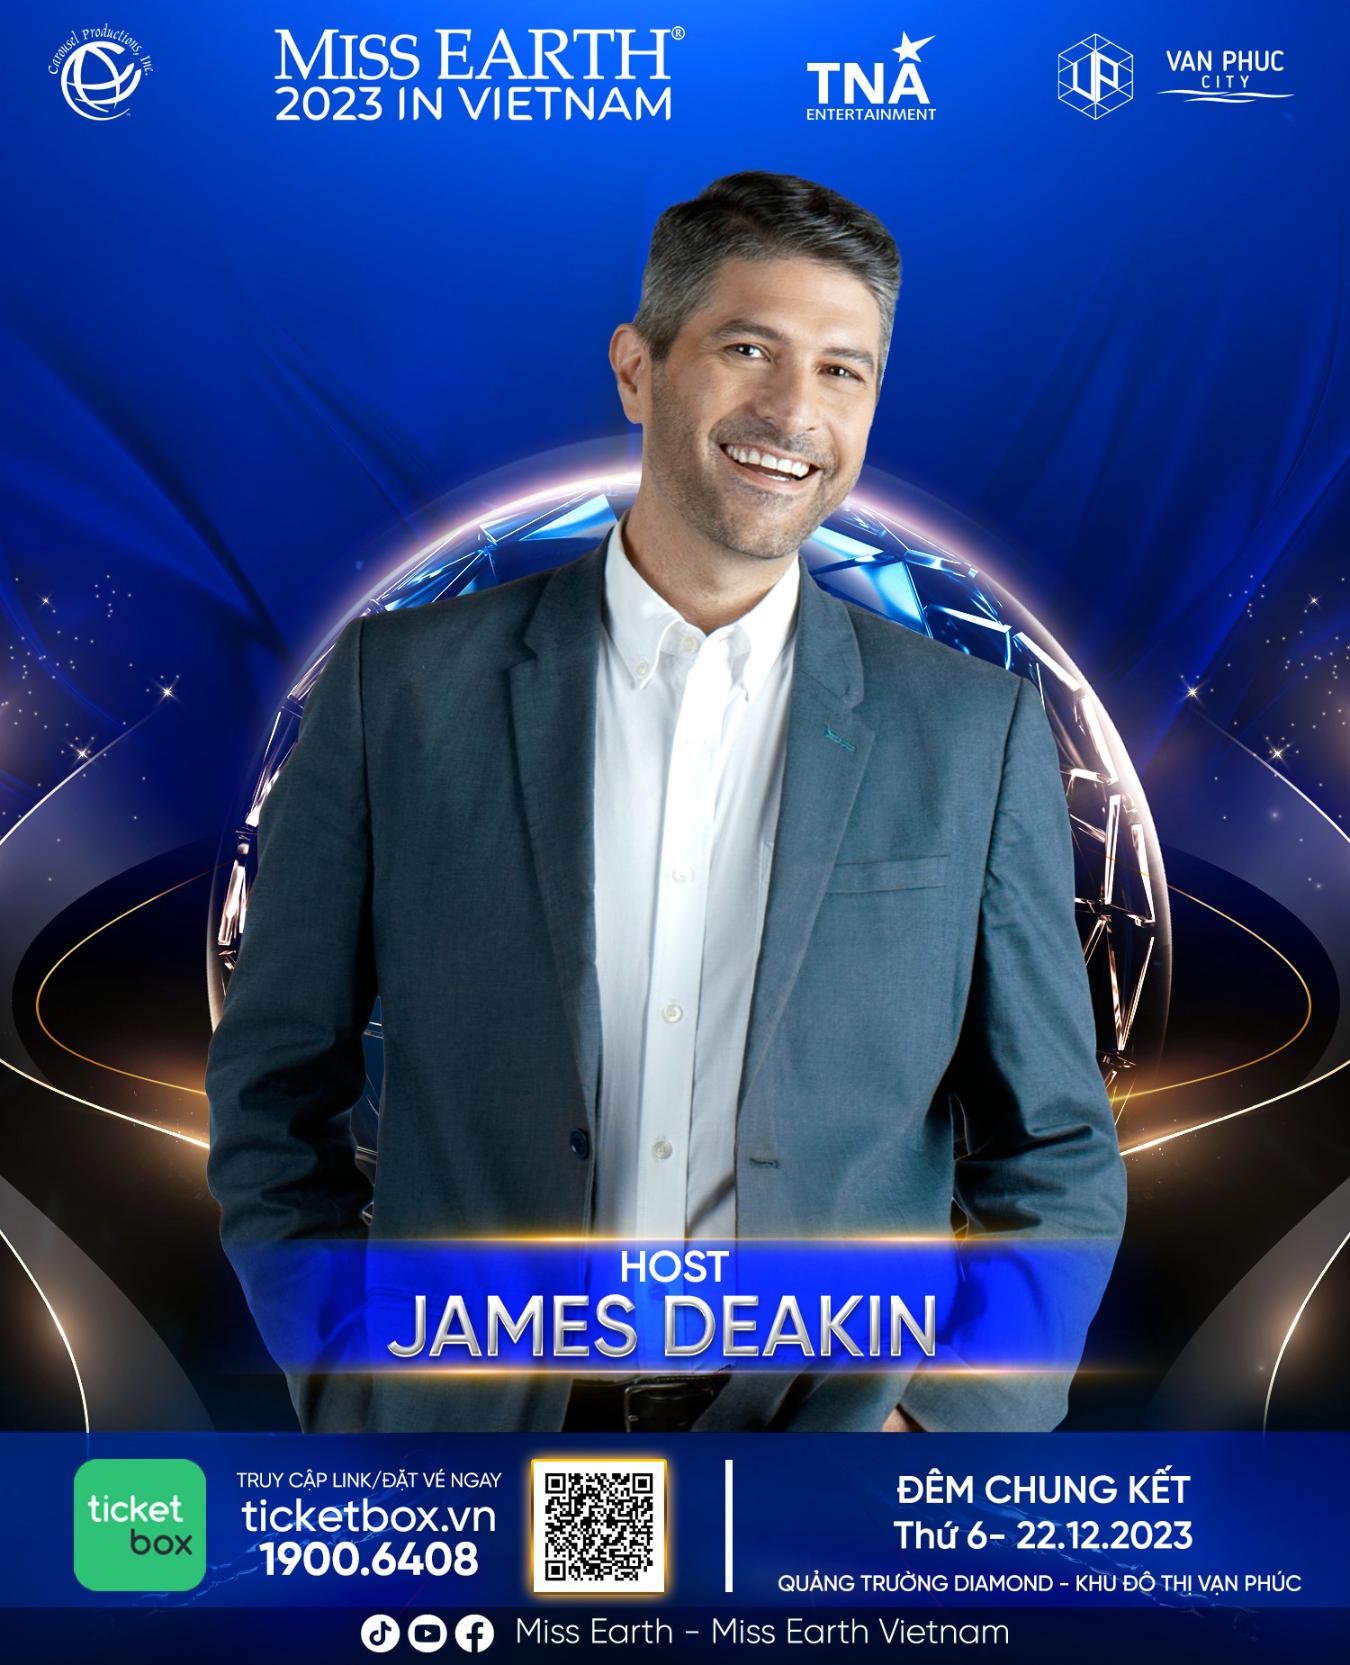 Host James Deakin Hé lộ dàn nghệ sĩ trình diễn trong chung kết Miss Earth 2023